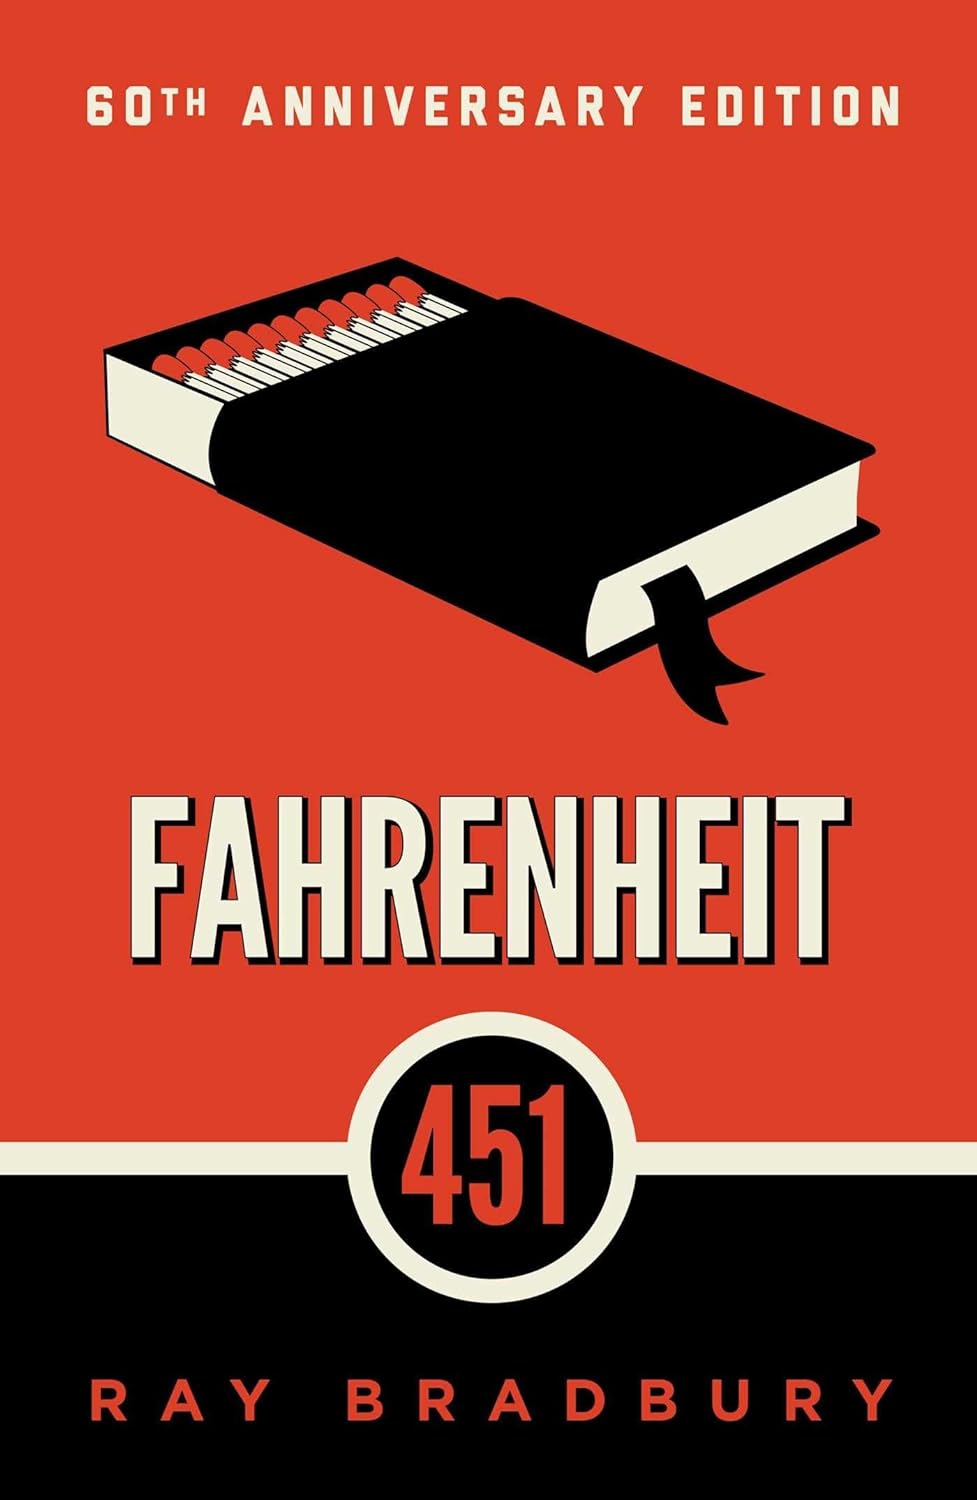 Fahrenheit 451 by Ray Bradbury (1953)